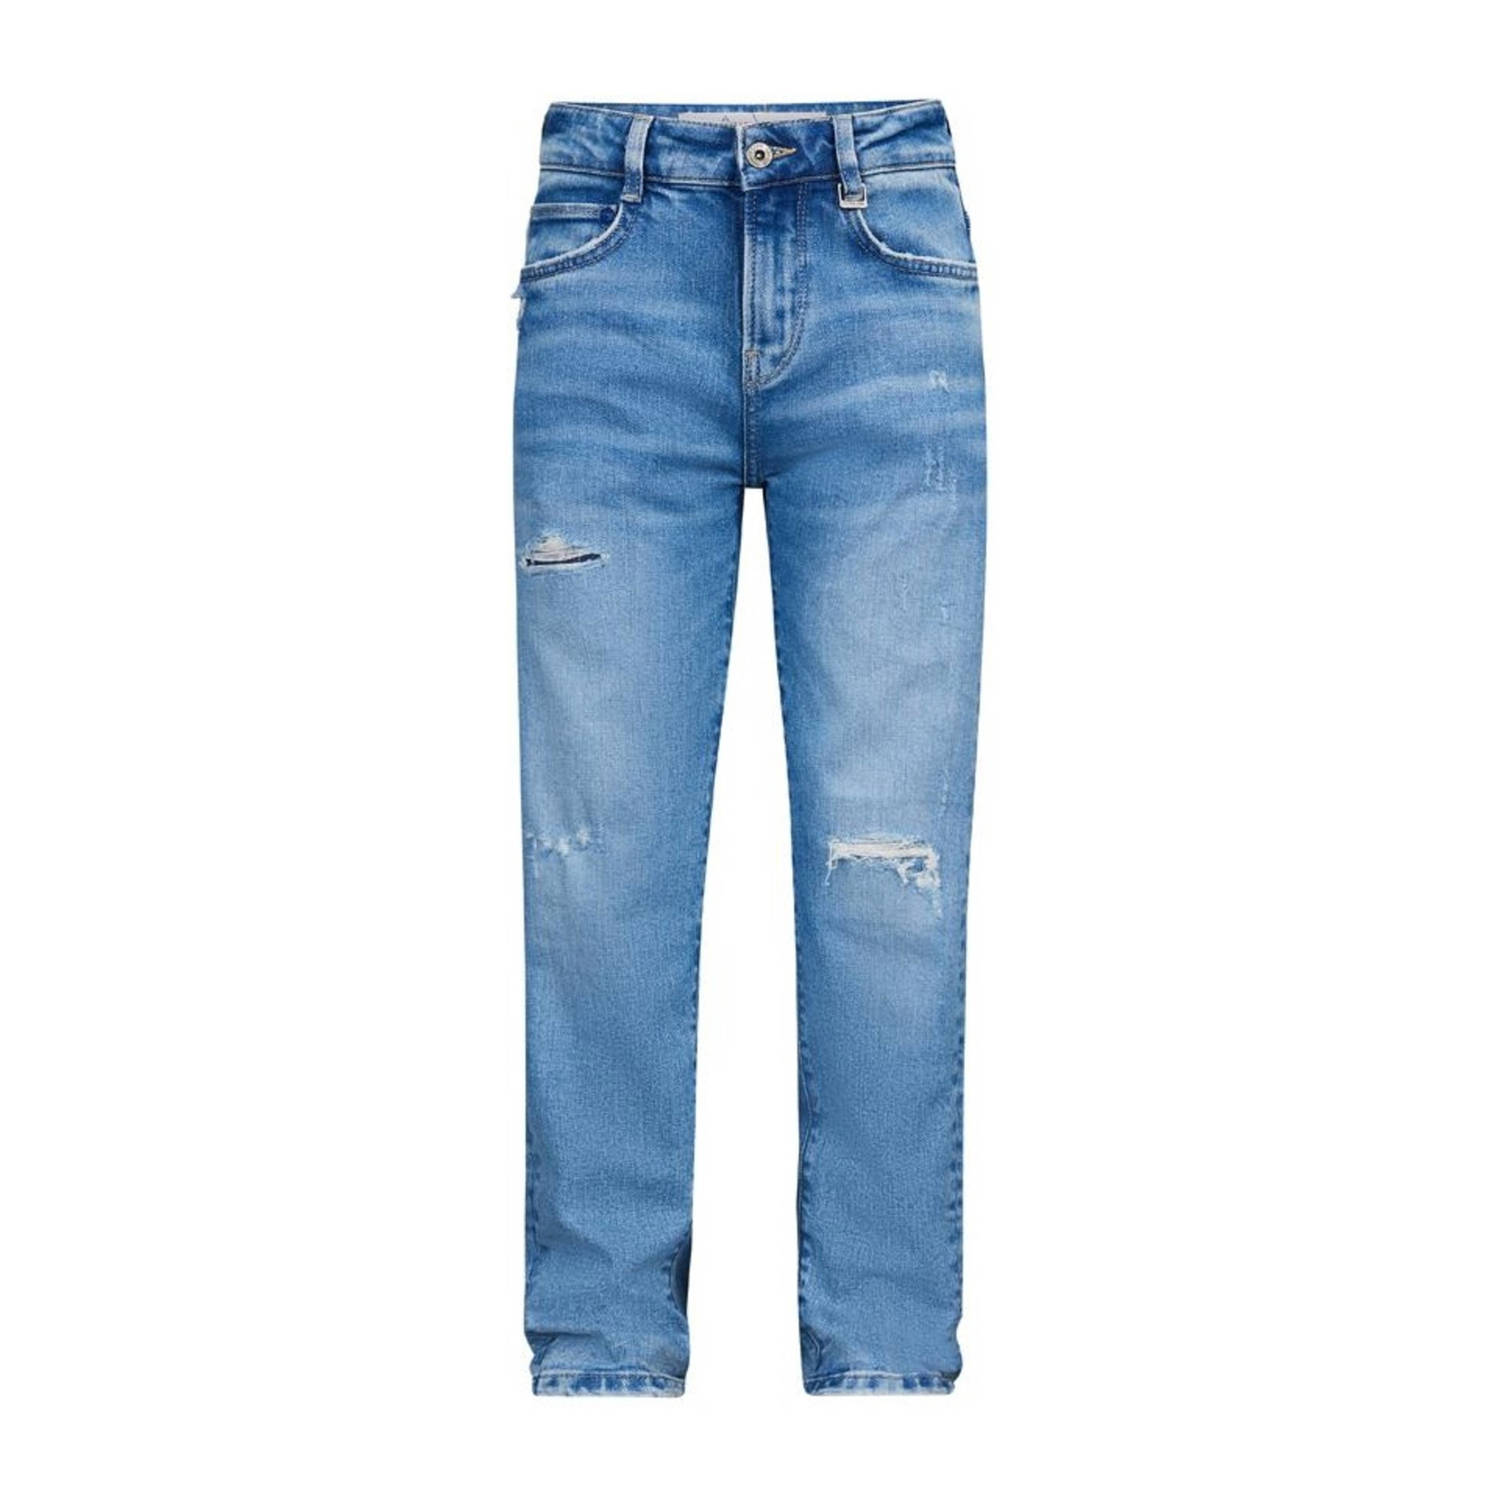 Retour Jeans loose fit jeans Landon Vintage light blue denim